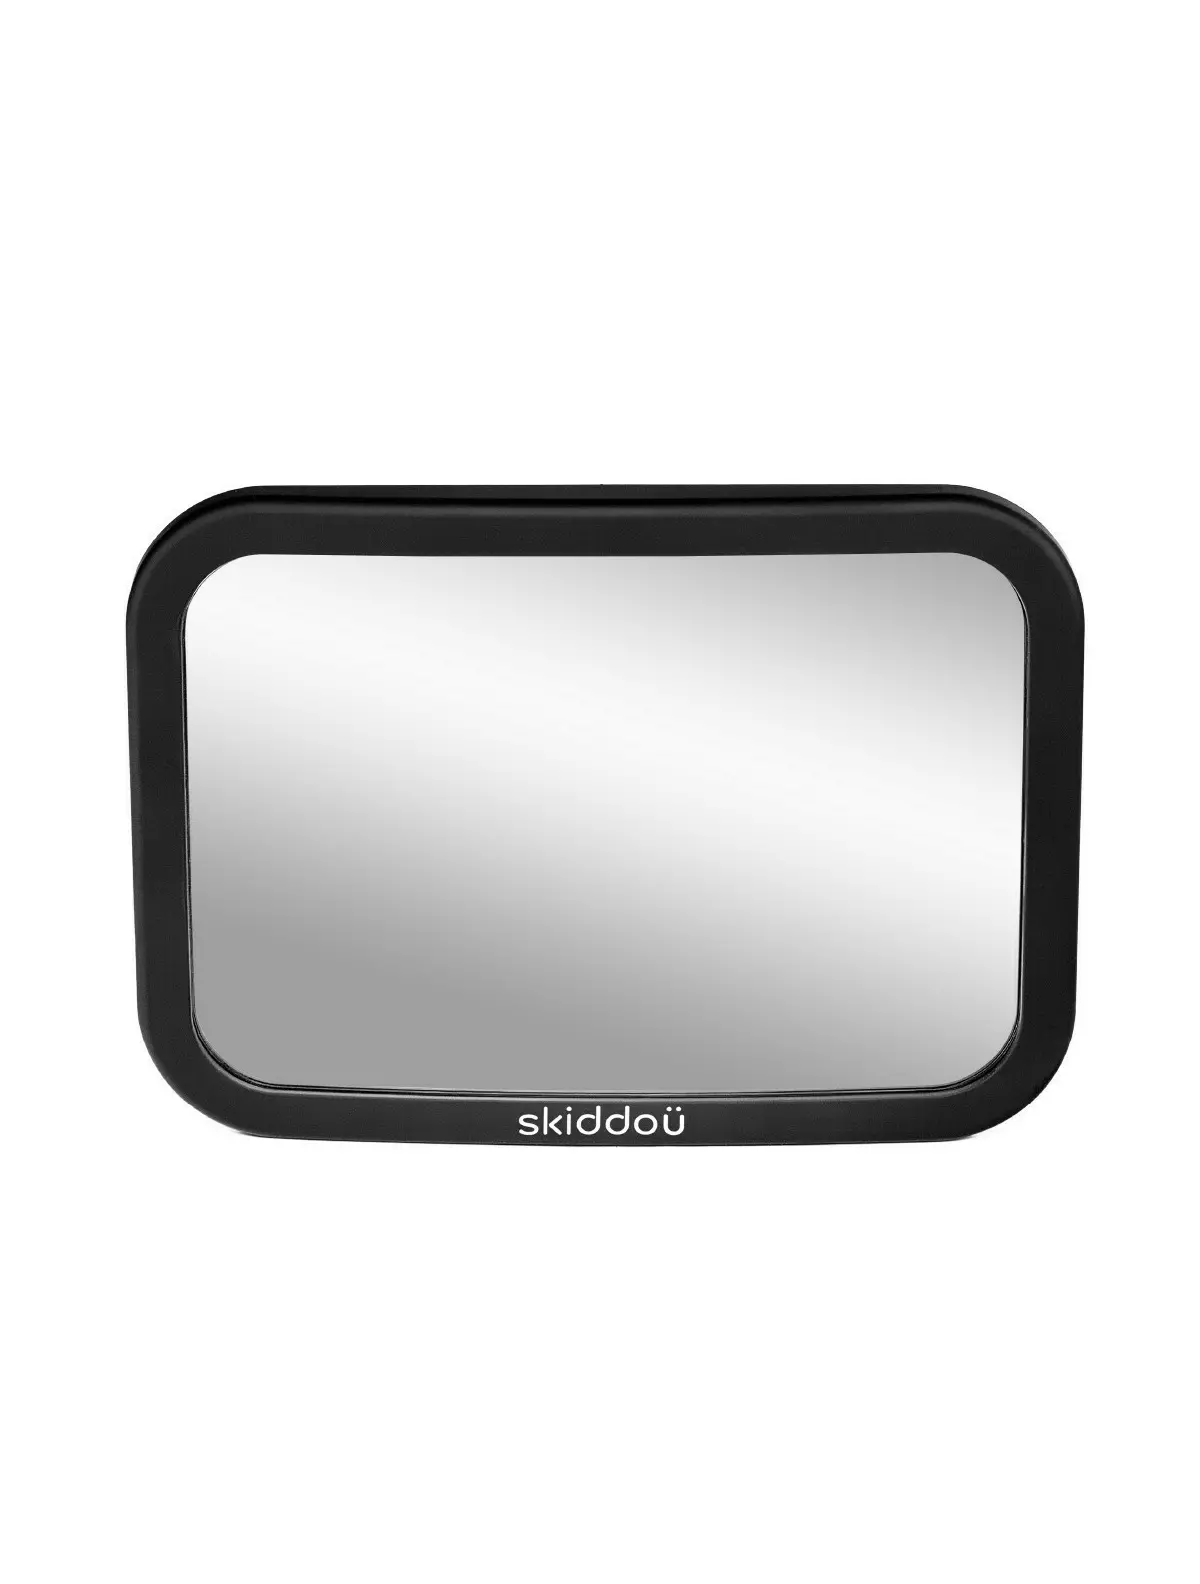 Oglinda auto retrovizoare Skiddou Basp pentru supraveghere copii, reglare 360 grade, 26x19 cm